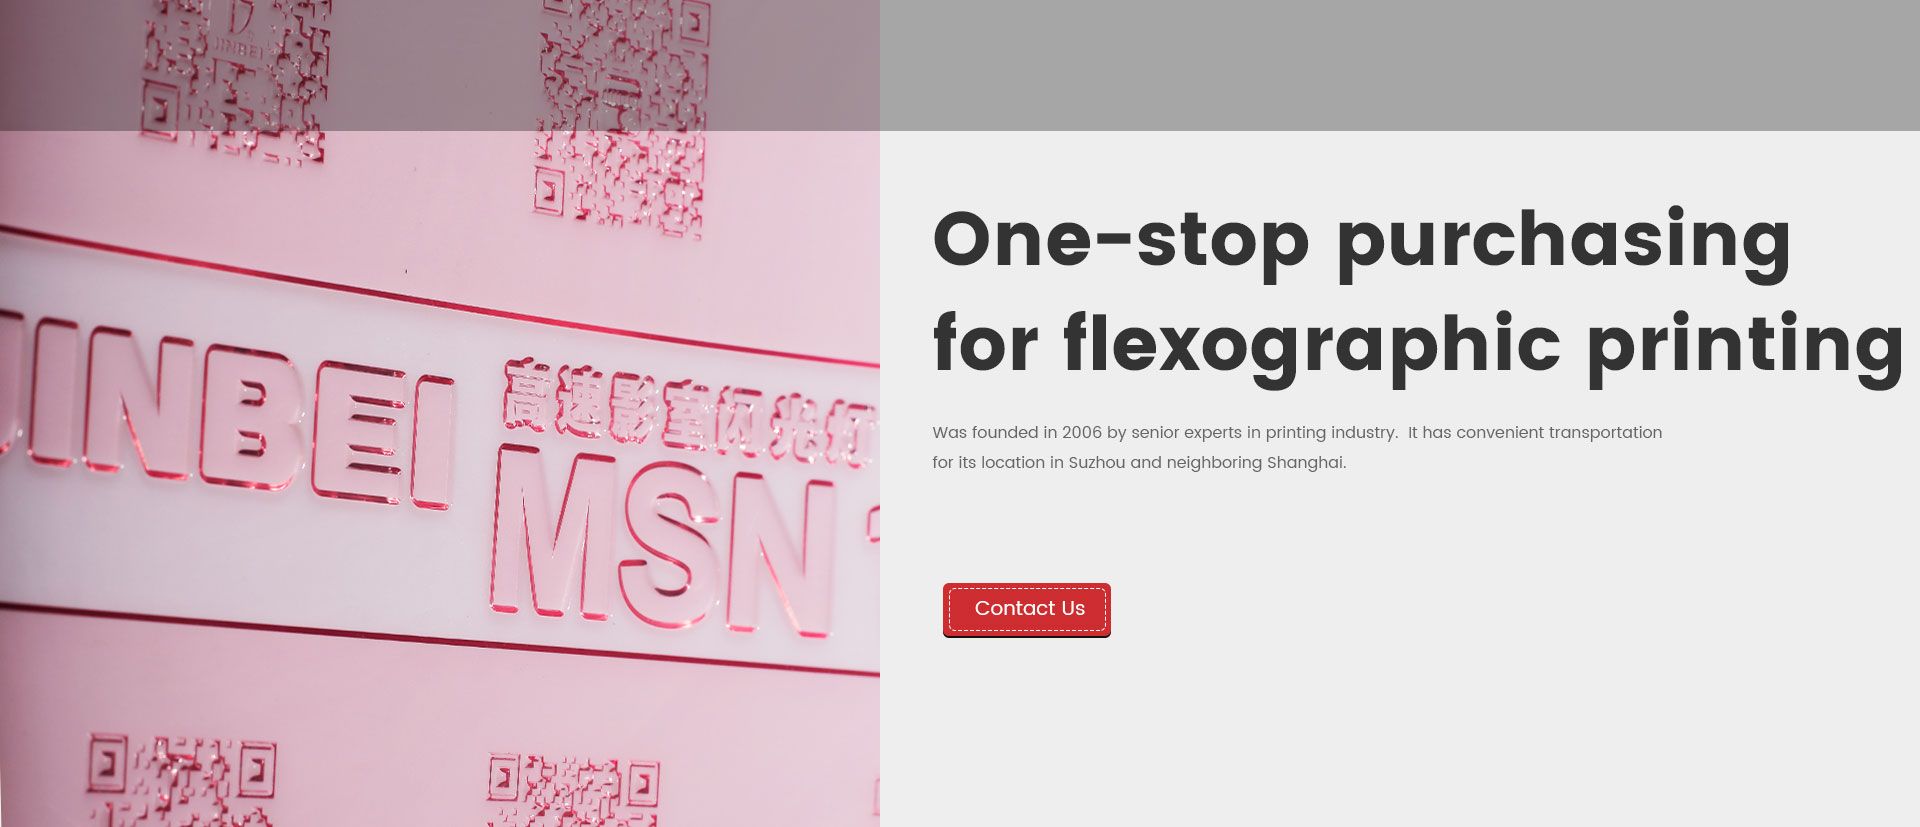 Analog Flexographic Printing Plate